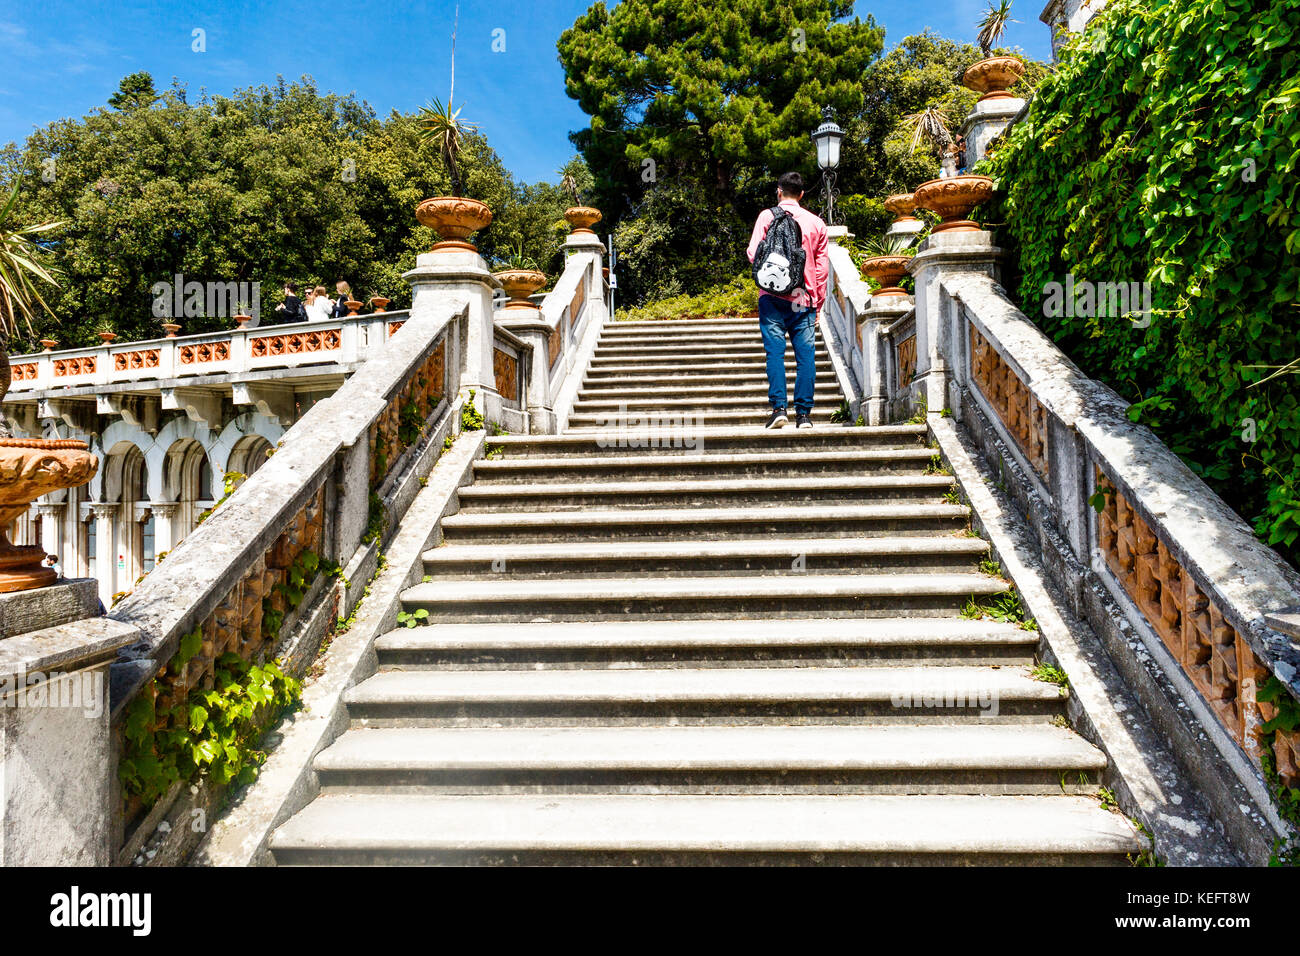 Escalier de l'immense château de Miramare à Trieste, Italie Banque D'Images